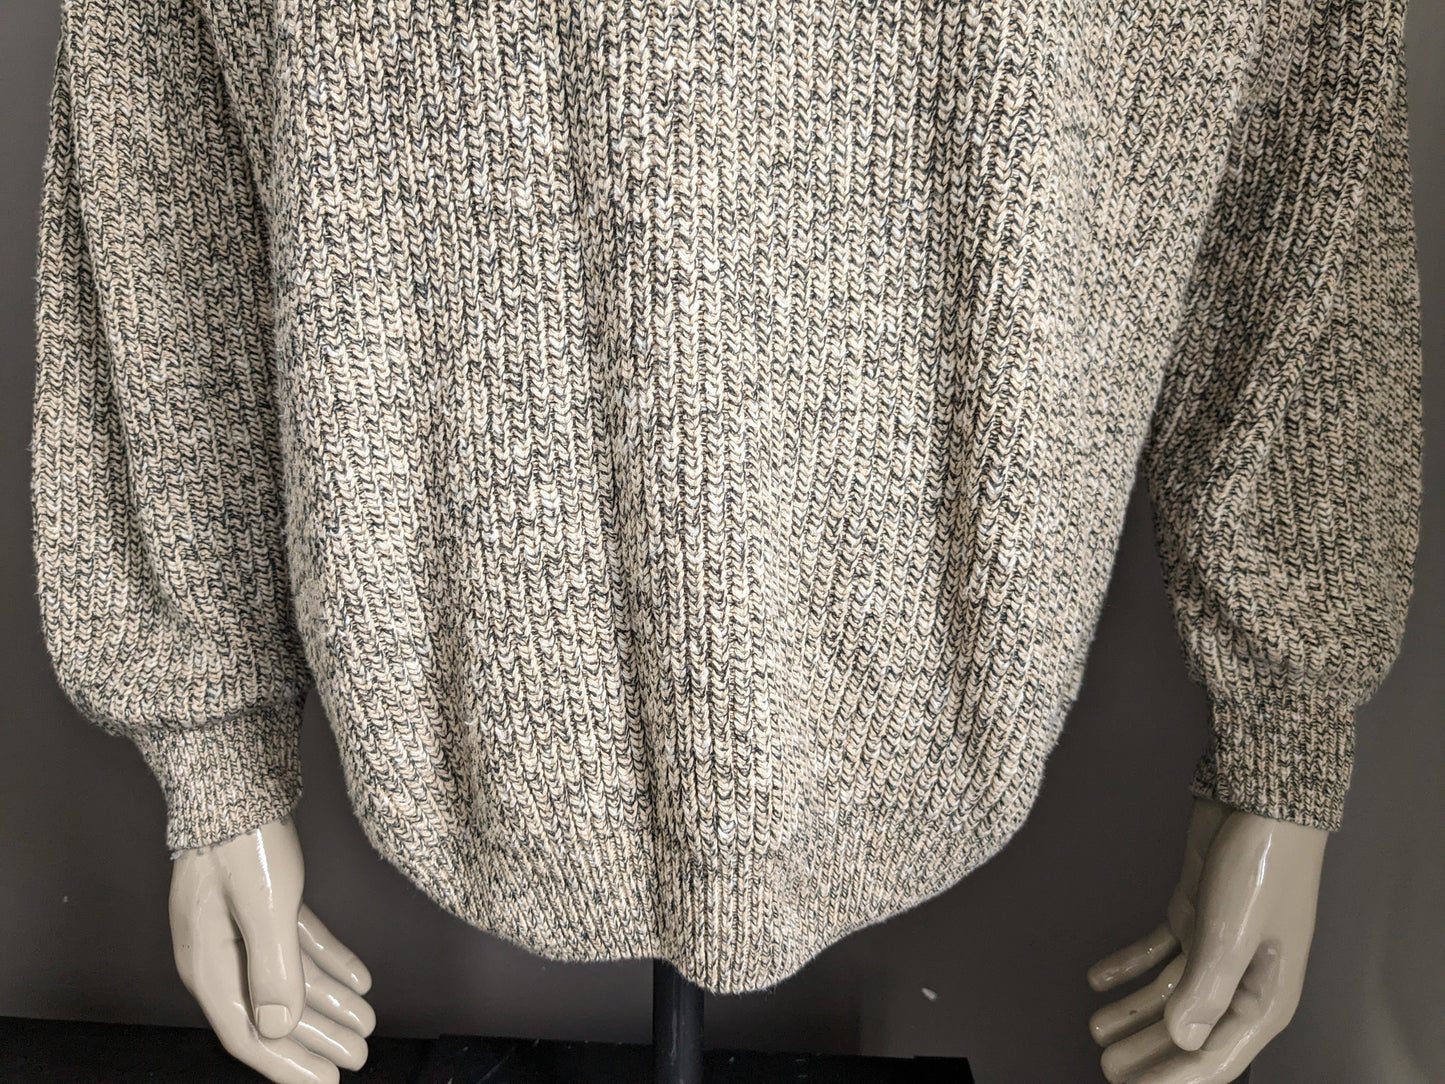 Maglione vintage della moda dell'uomo. Beige grigio misto. Dimensioni L / XL Modello oversize vintage.